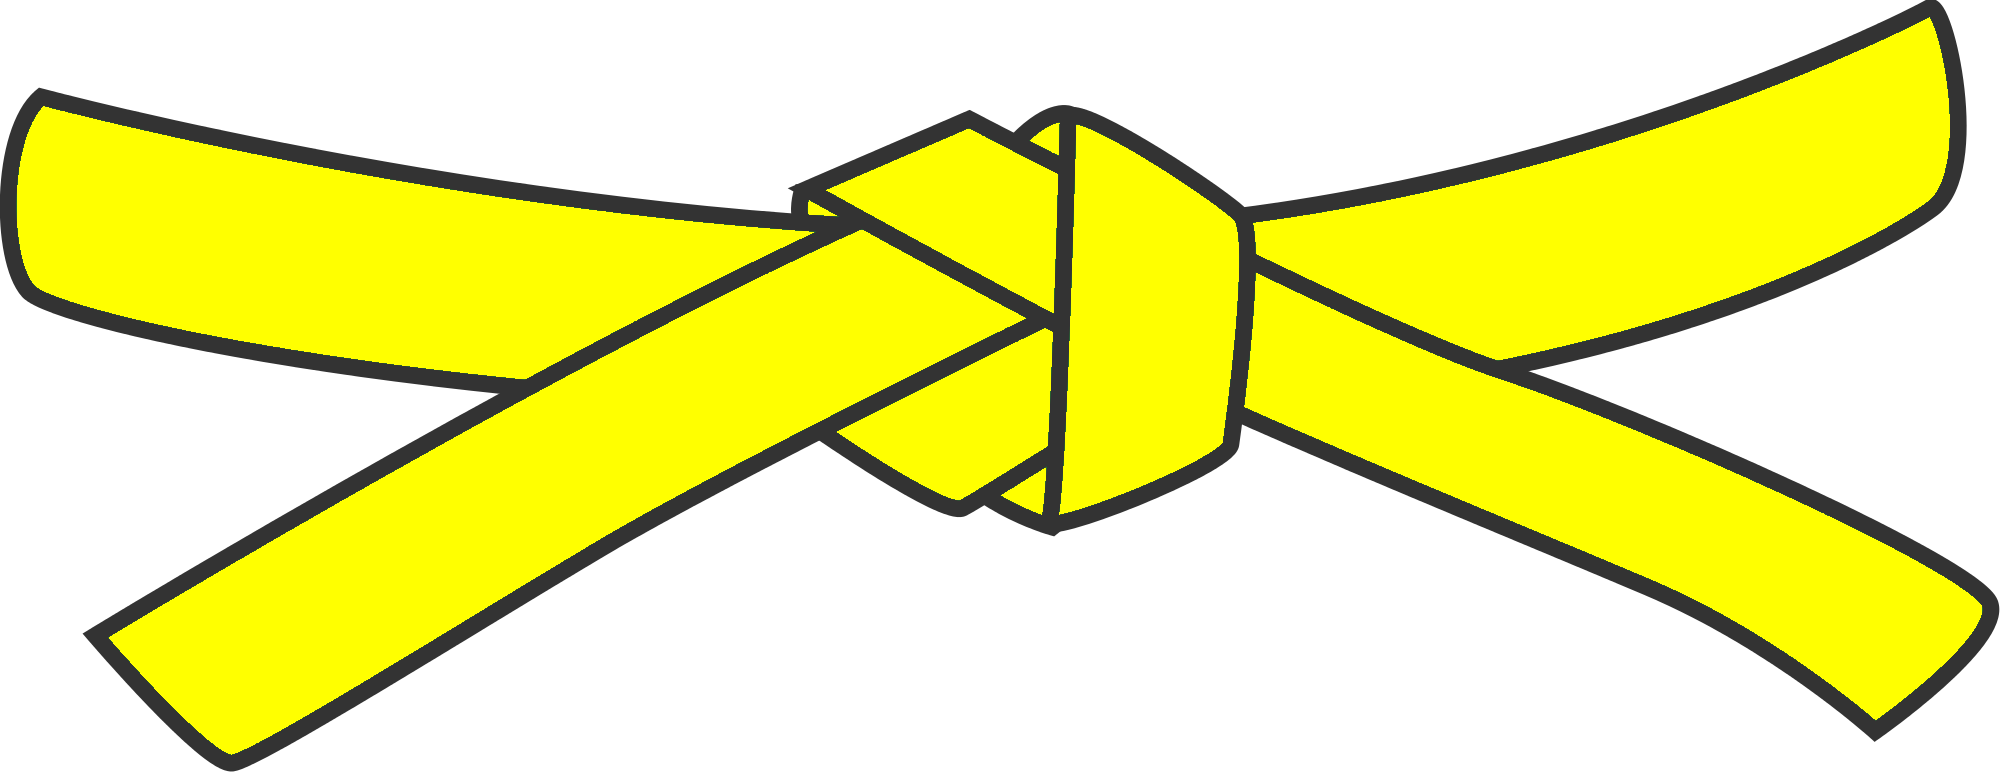 8th Kyu - Yellow belt